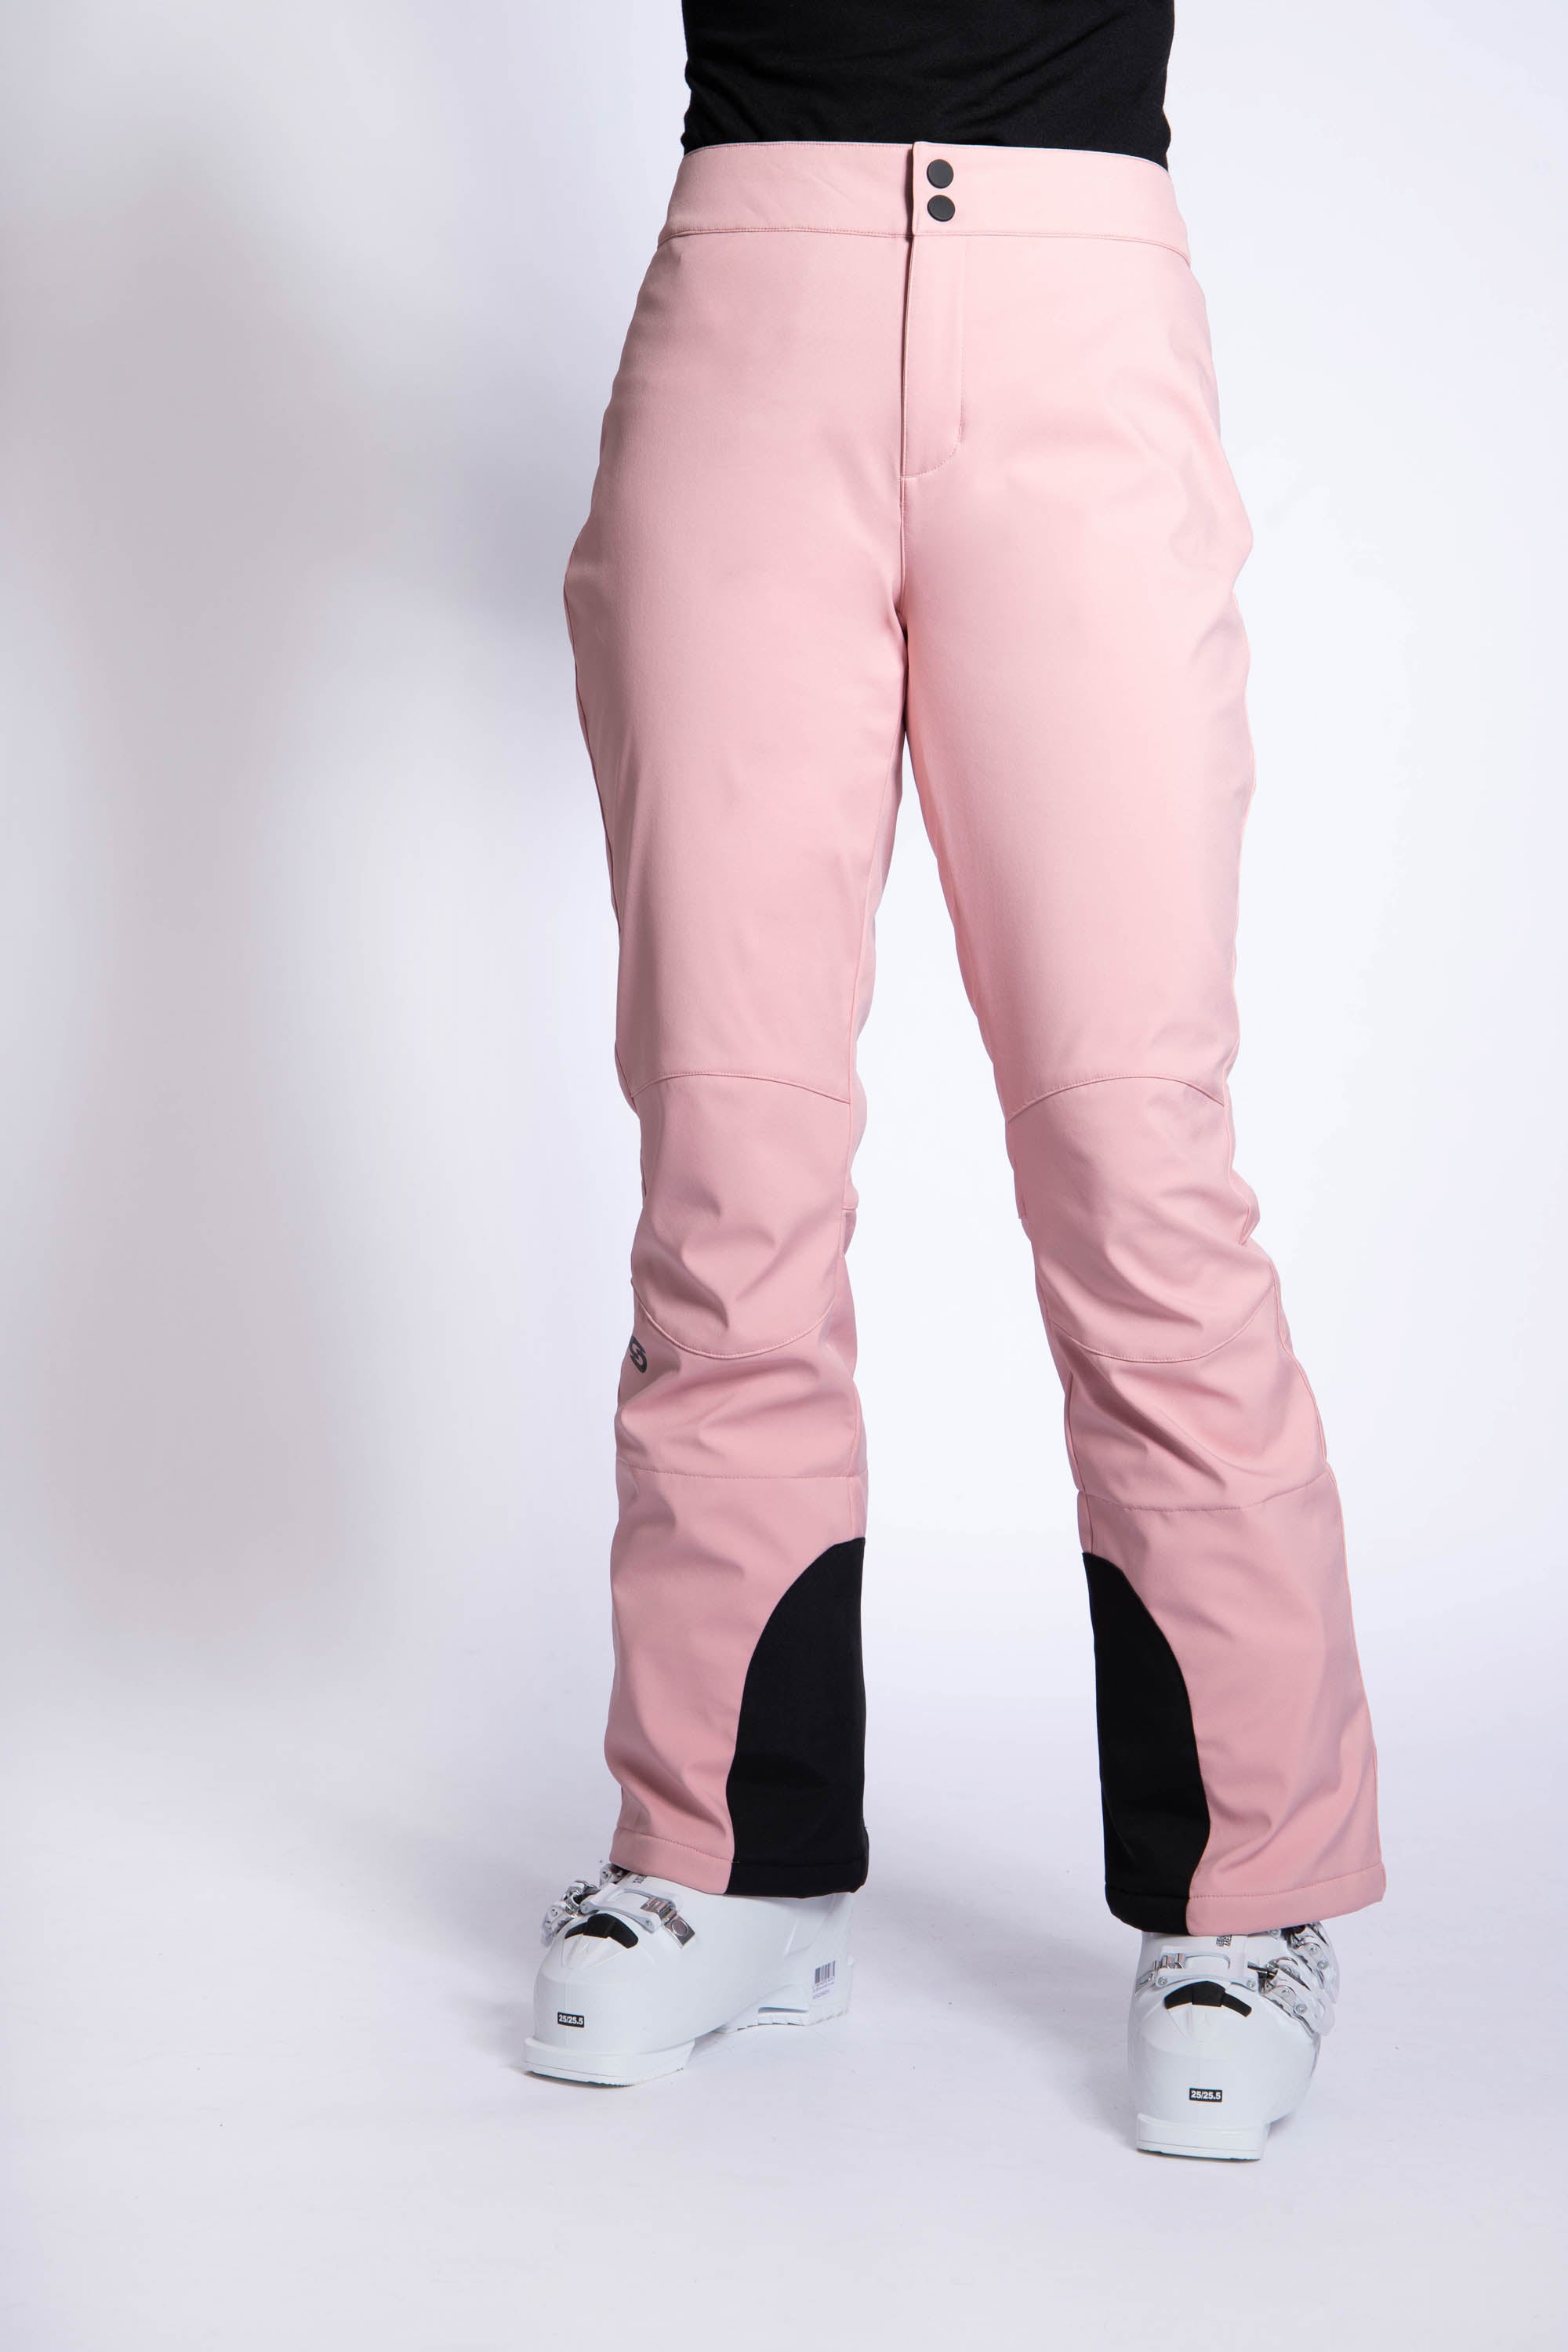 Fab - Naisten Lasketteluhousut, Sakura Pink